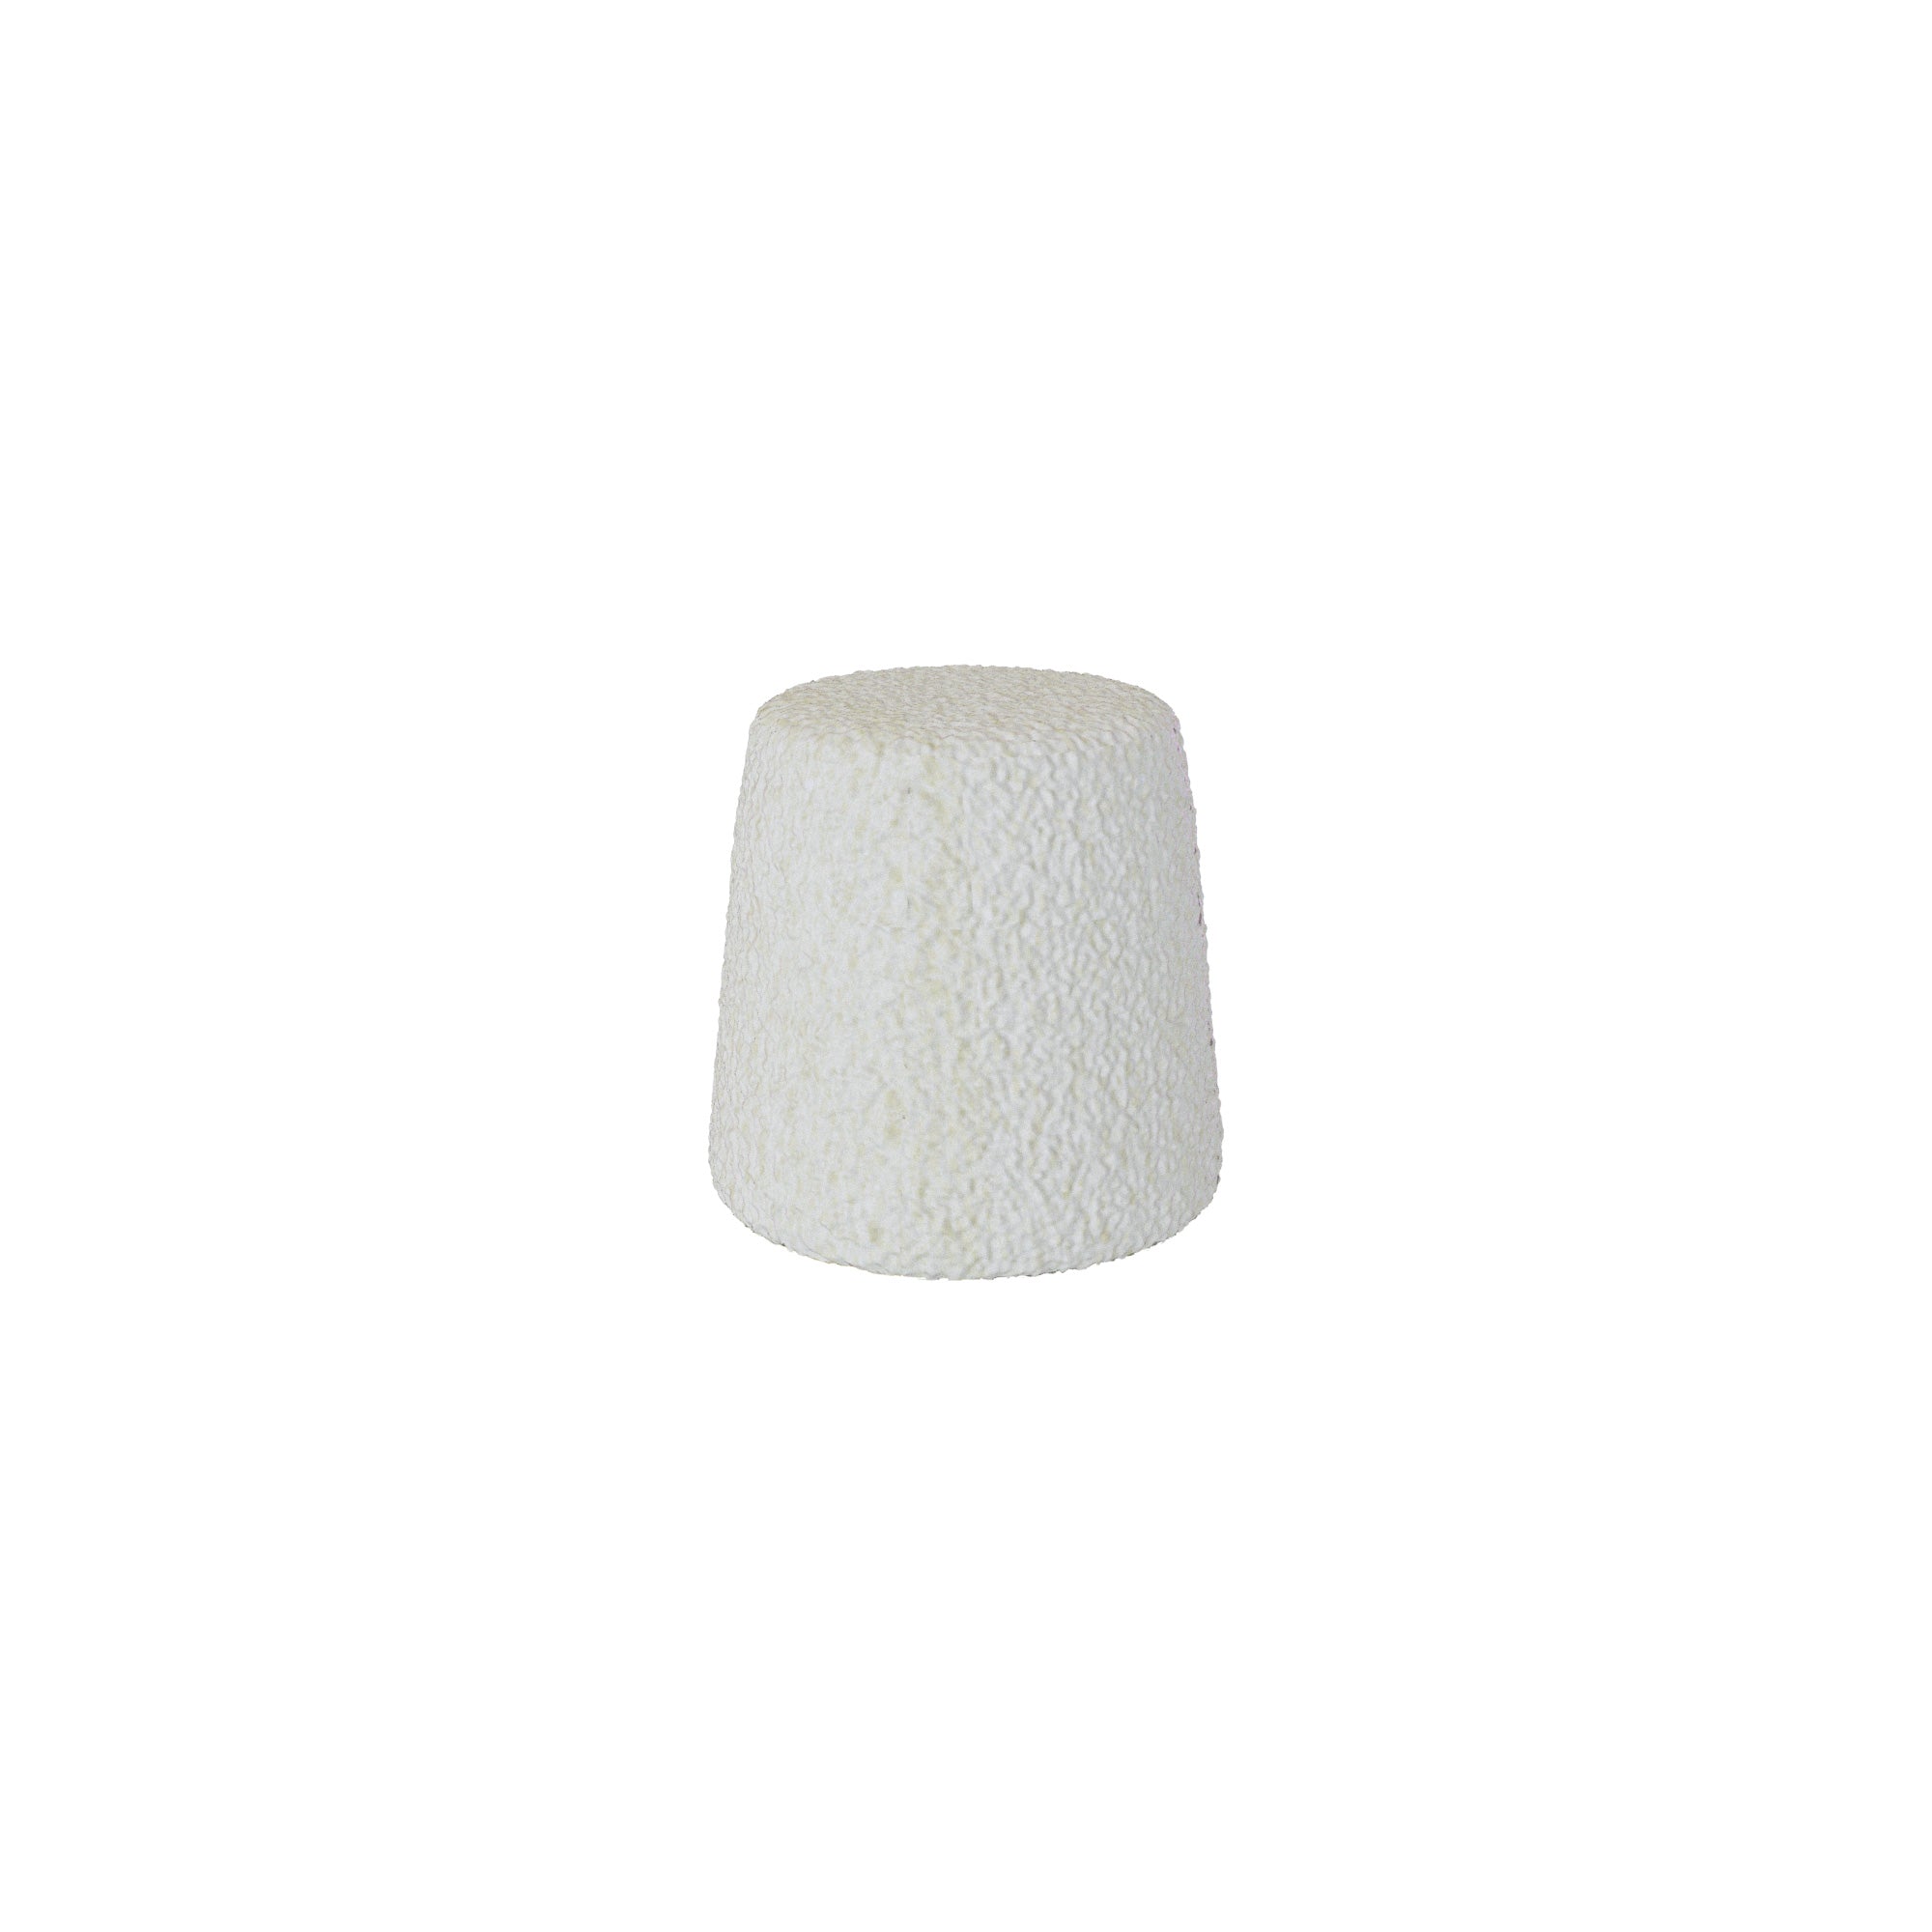 DSI Pure Sponge Sterile Collagen Plug In Blister